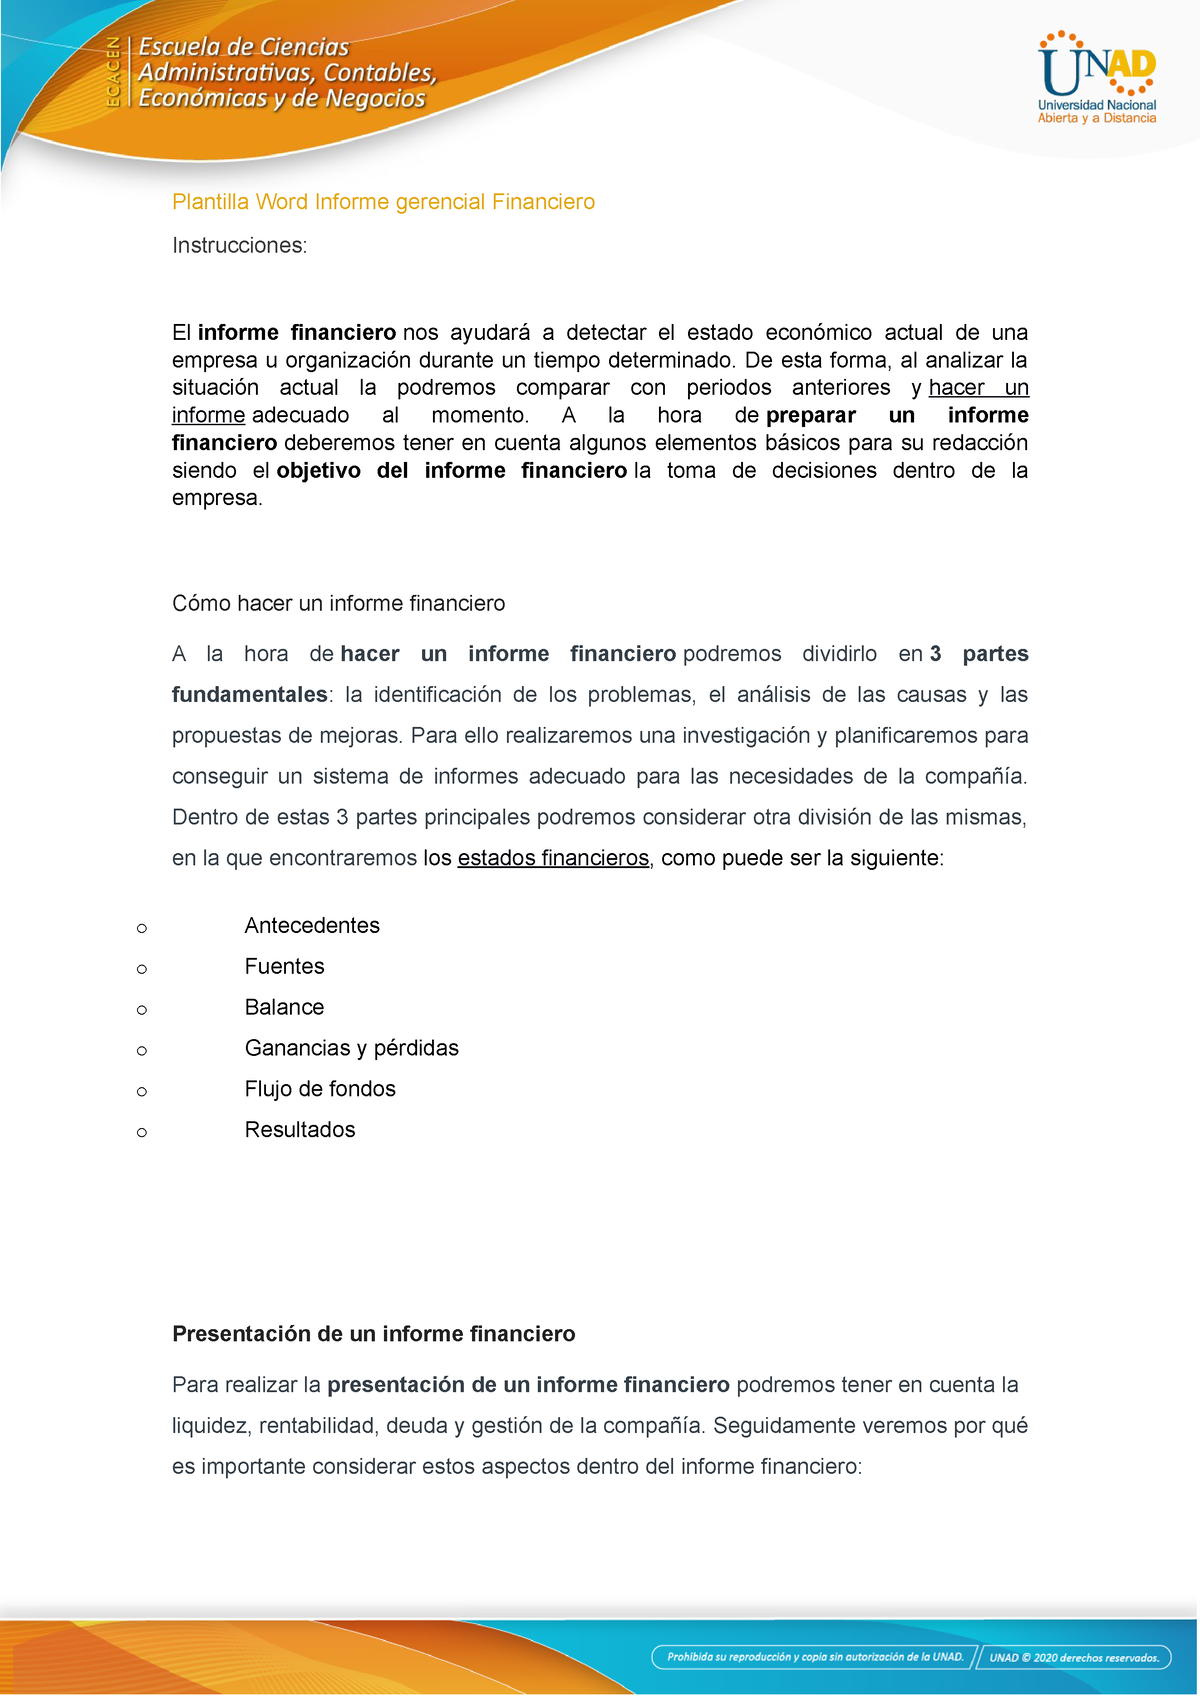 Plantilla PARA USO DE LA ACTIVIDAD PREVISTA - Plantilla Word Informe  gerencial Financiero - Studocu